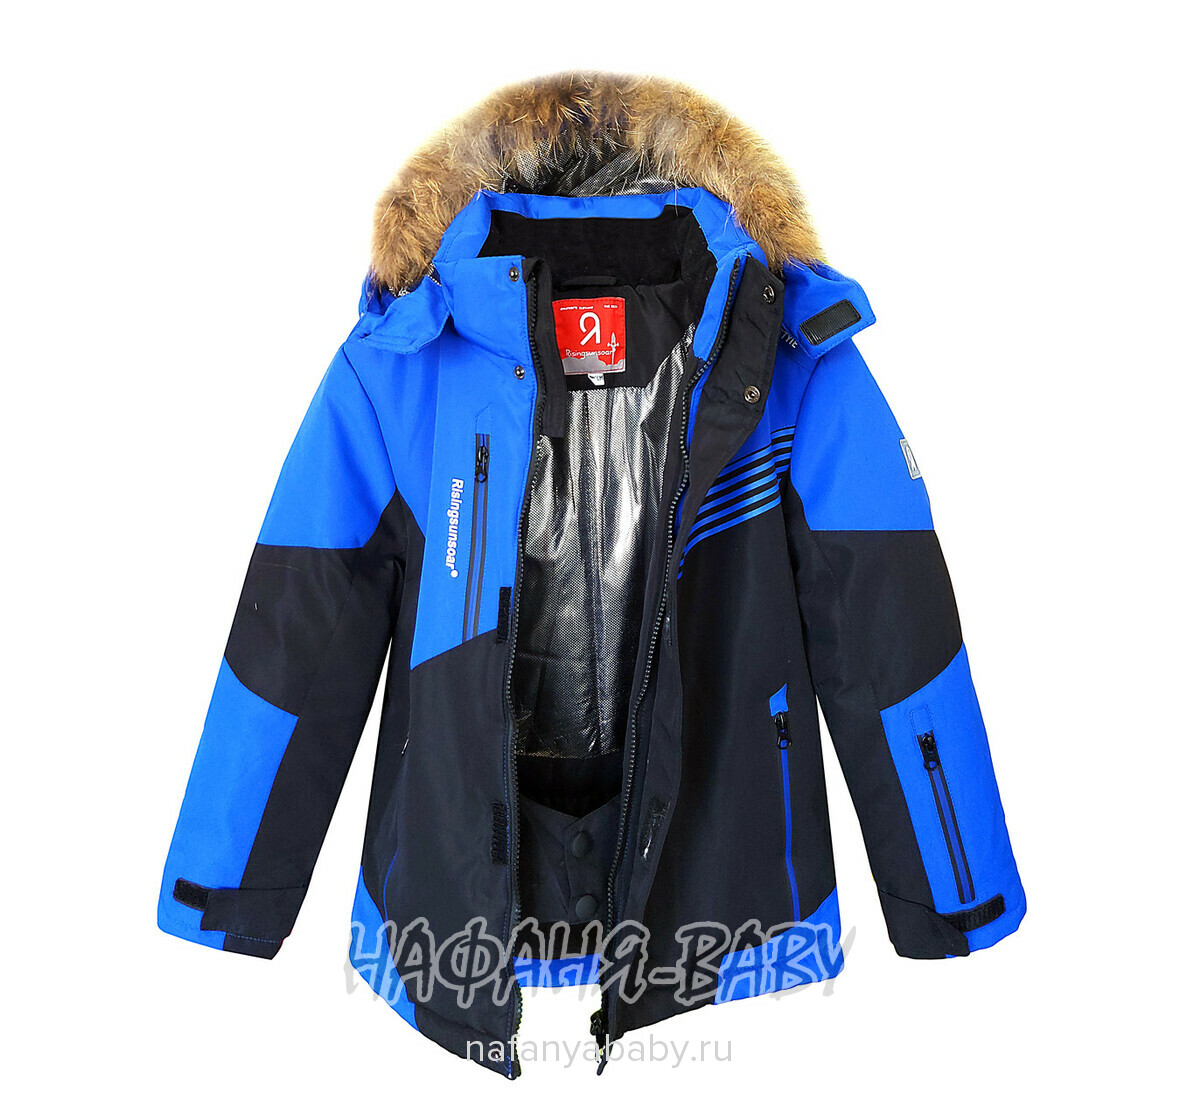 Детский зимний костюм арт.2202, от 7 до 12 лет, оптом Китай (Пекин), цвет синий с черным, оптом Китай (Пекин)